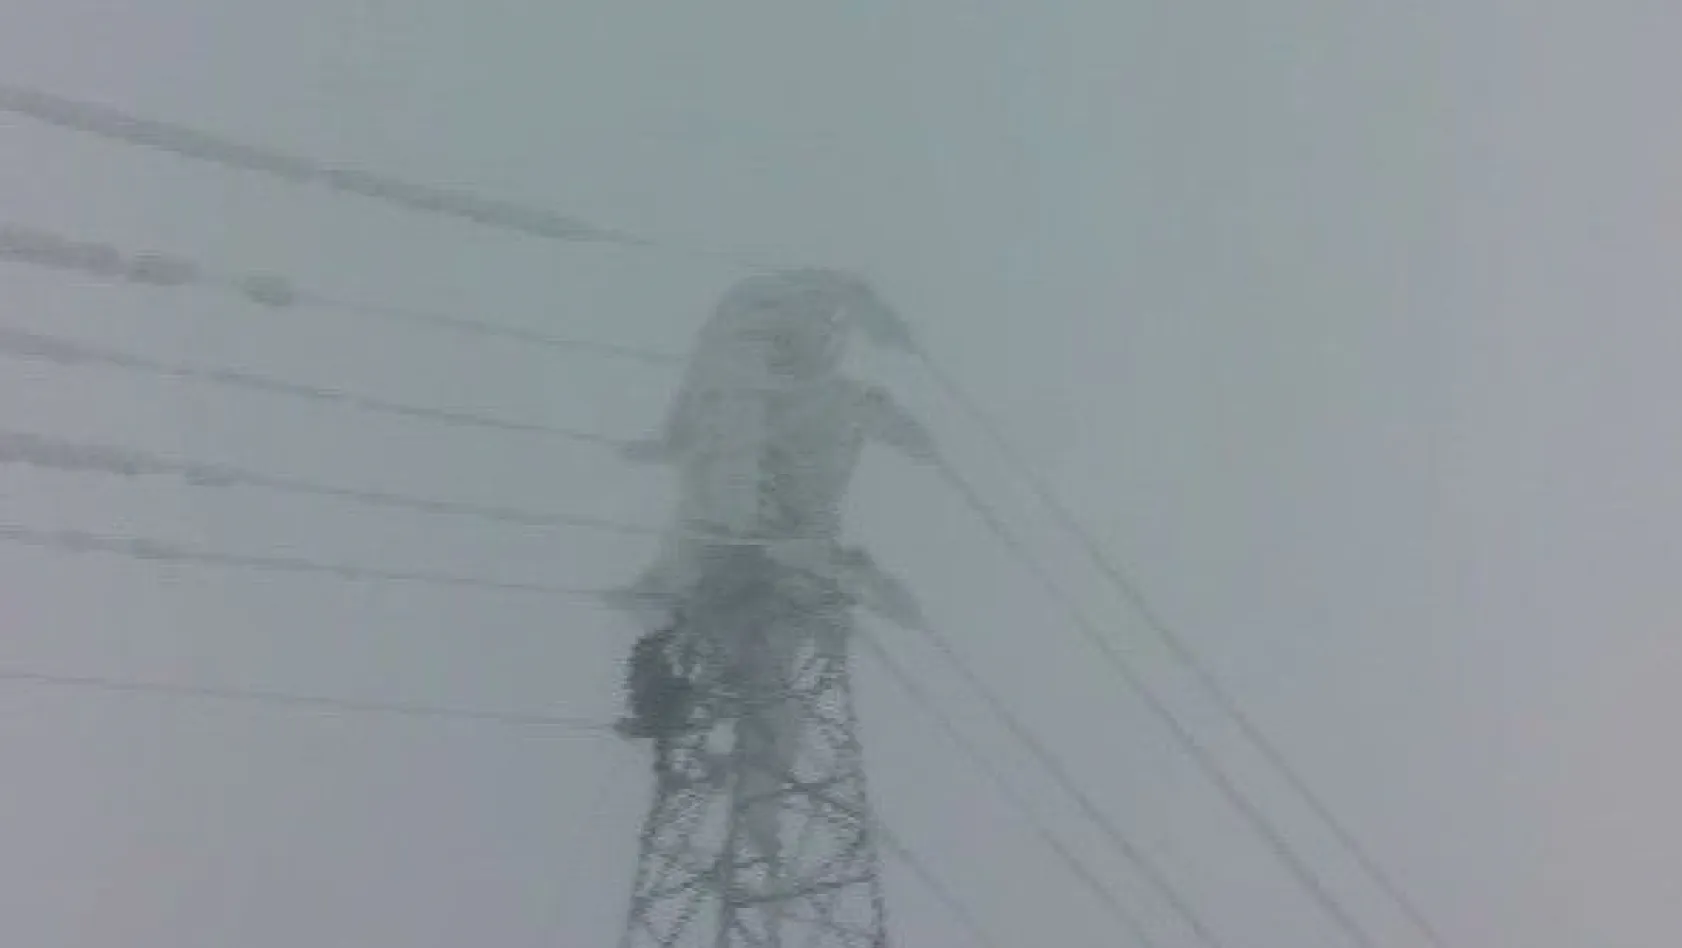 Enerji timleri 25 metre yükseklikte enerji hattında buz kırıyor
